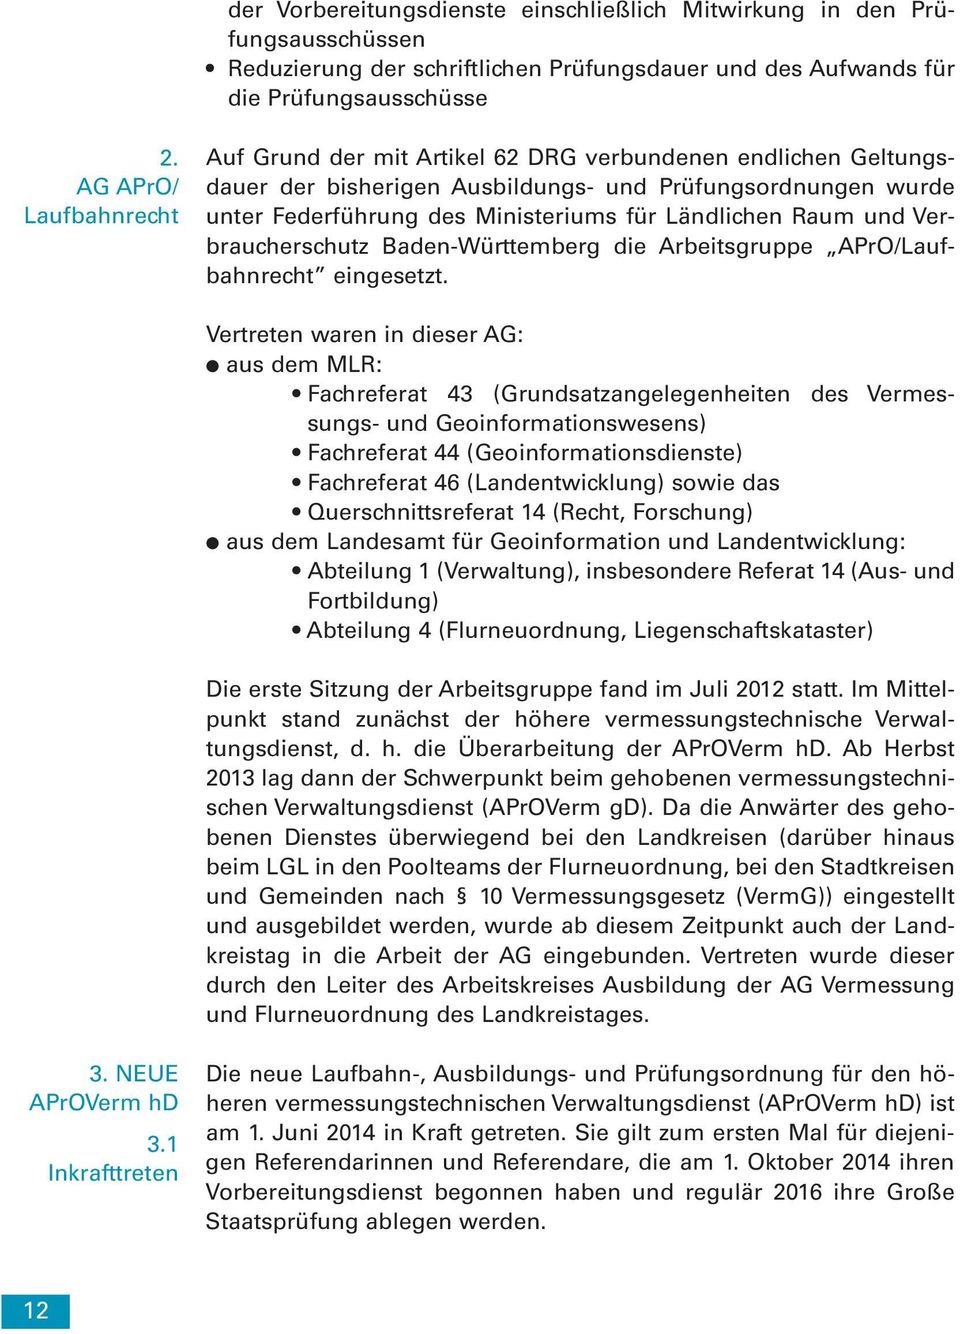 Raum und Verbraucherschutz Baden-Württemberg die Arbeitsgruppe APrO/Laufbahnrecht eingesetzt.